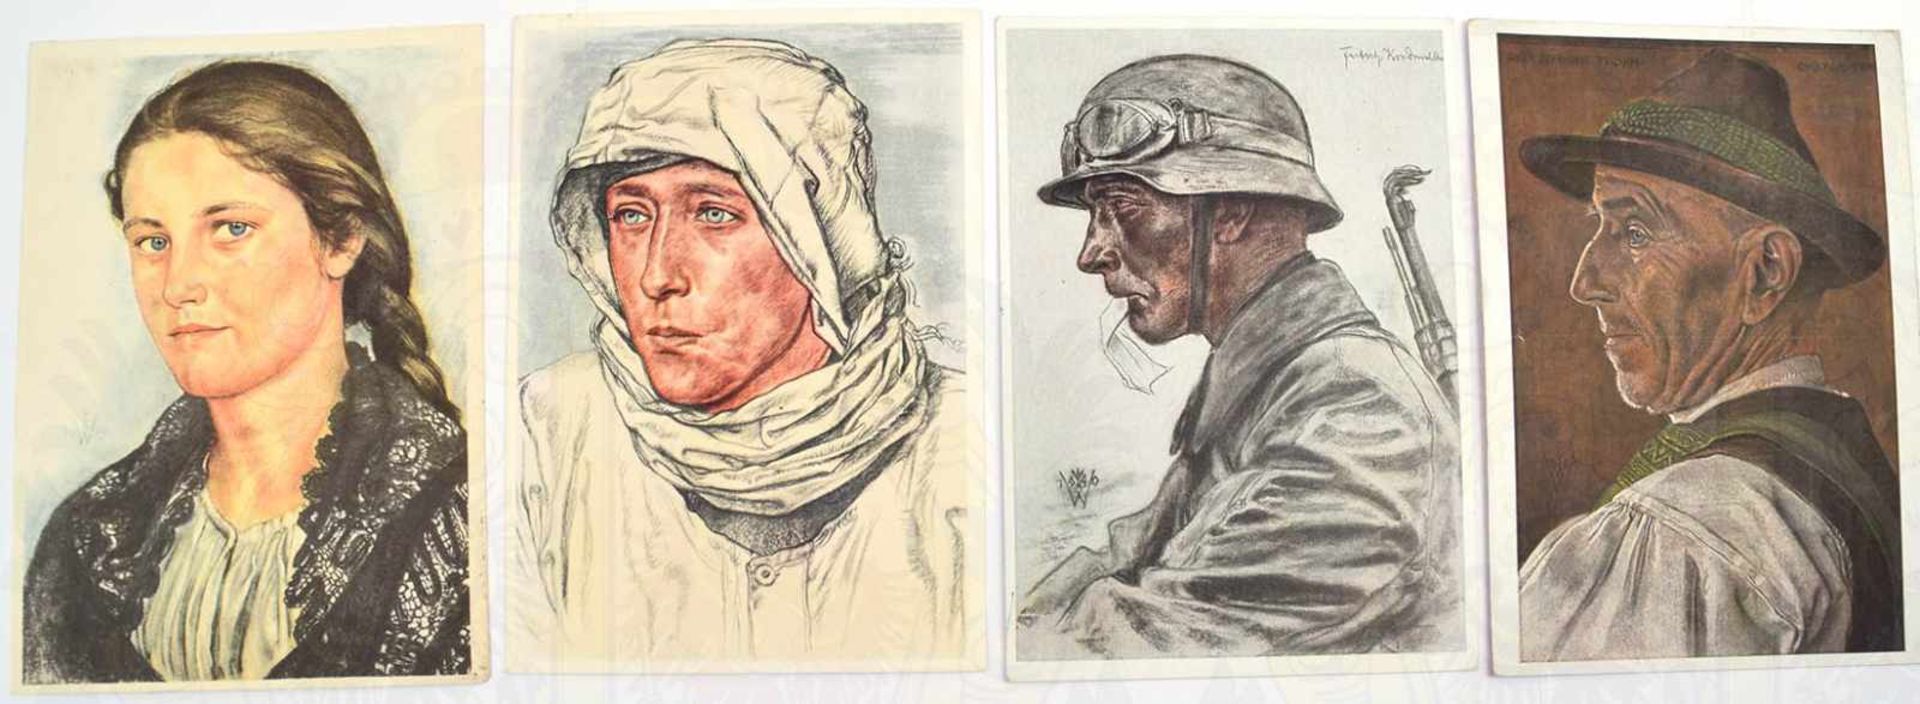 17 AK WILLRICH, meist farbig, VDA-Verlag, Gen.Major Rommel, Kpt.Ltn. Prien, Oberst Bräuer, Major - Bild 2 aus 2